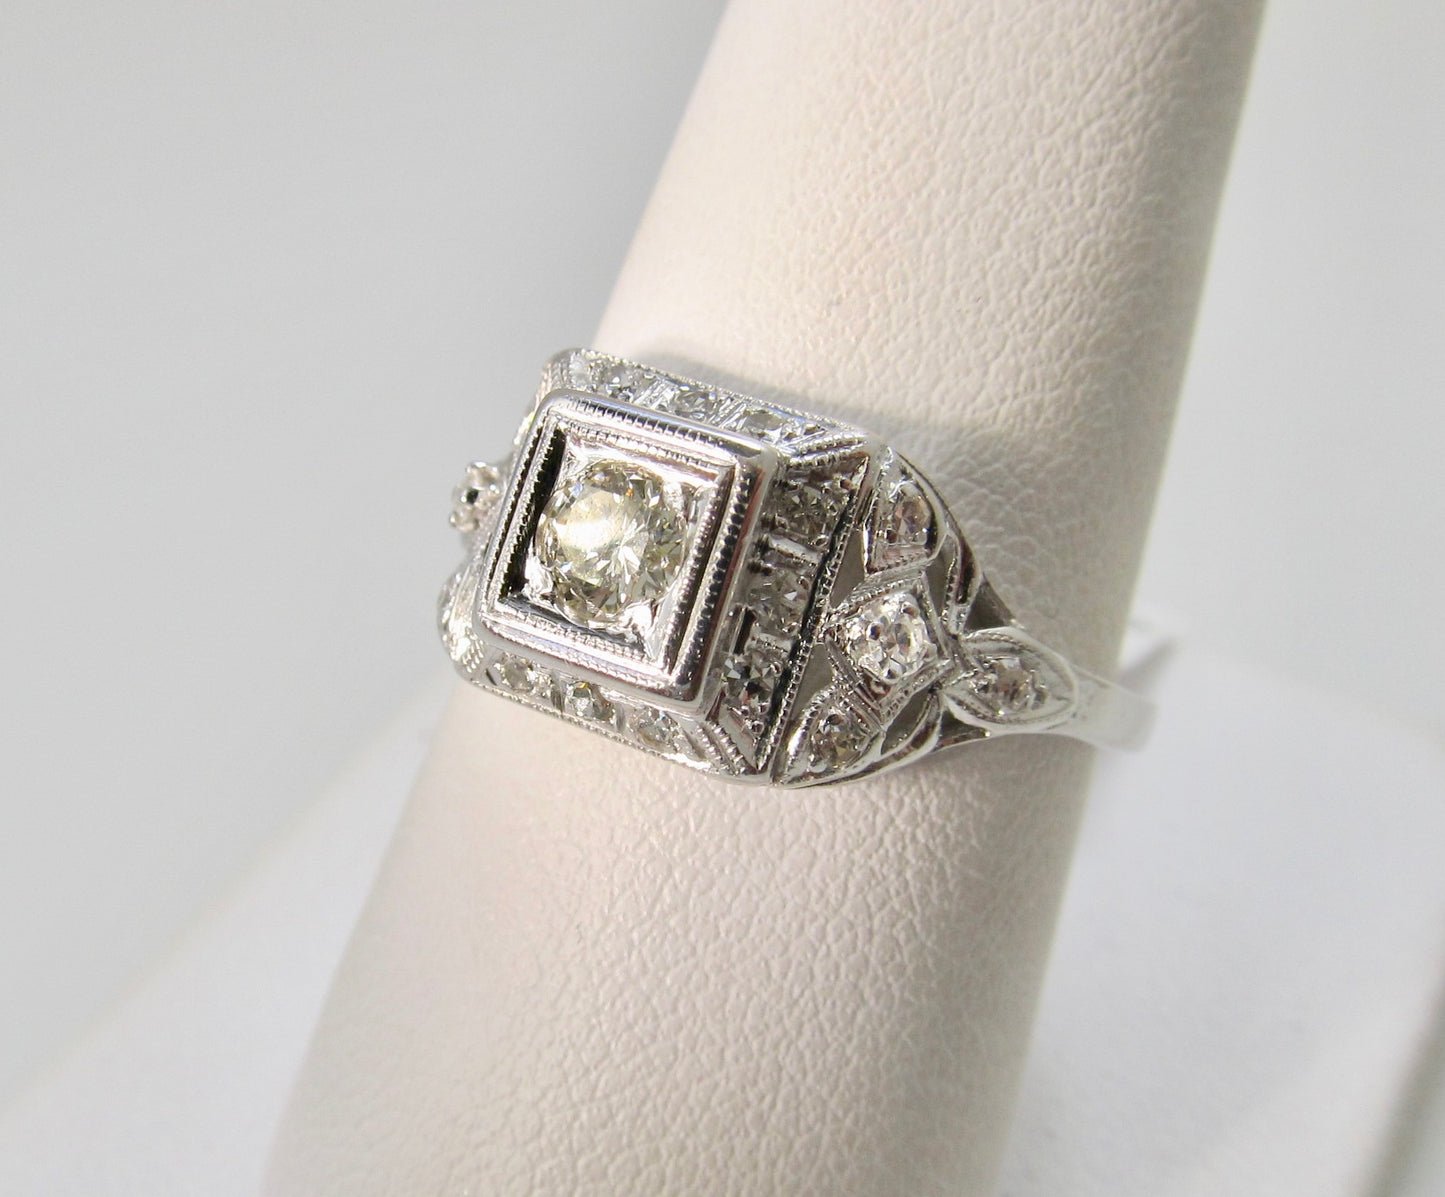 Antique platinum and diamond ring